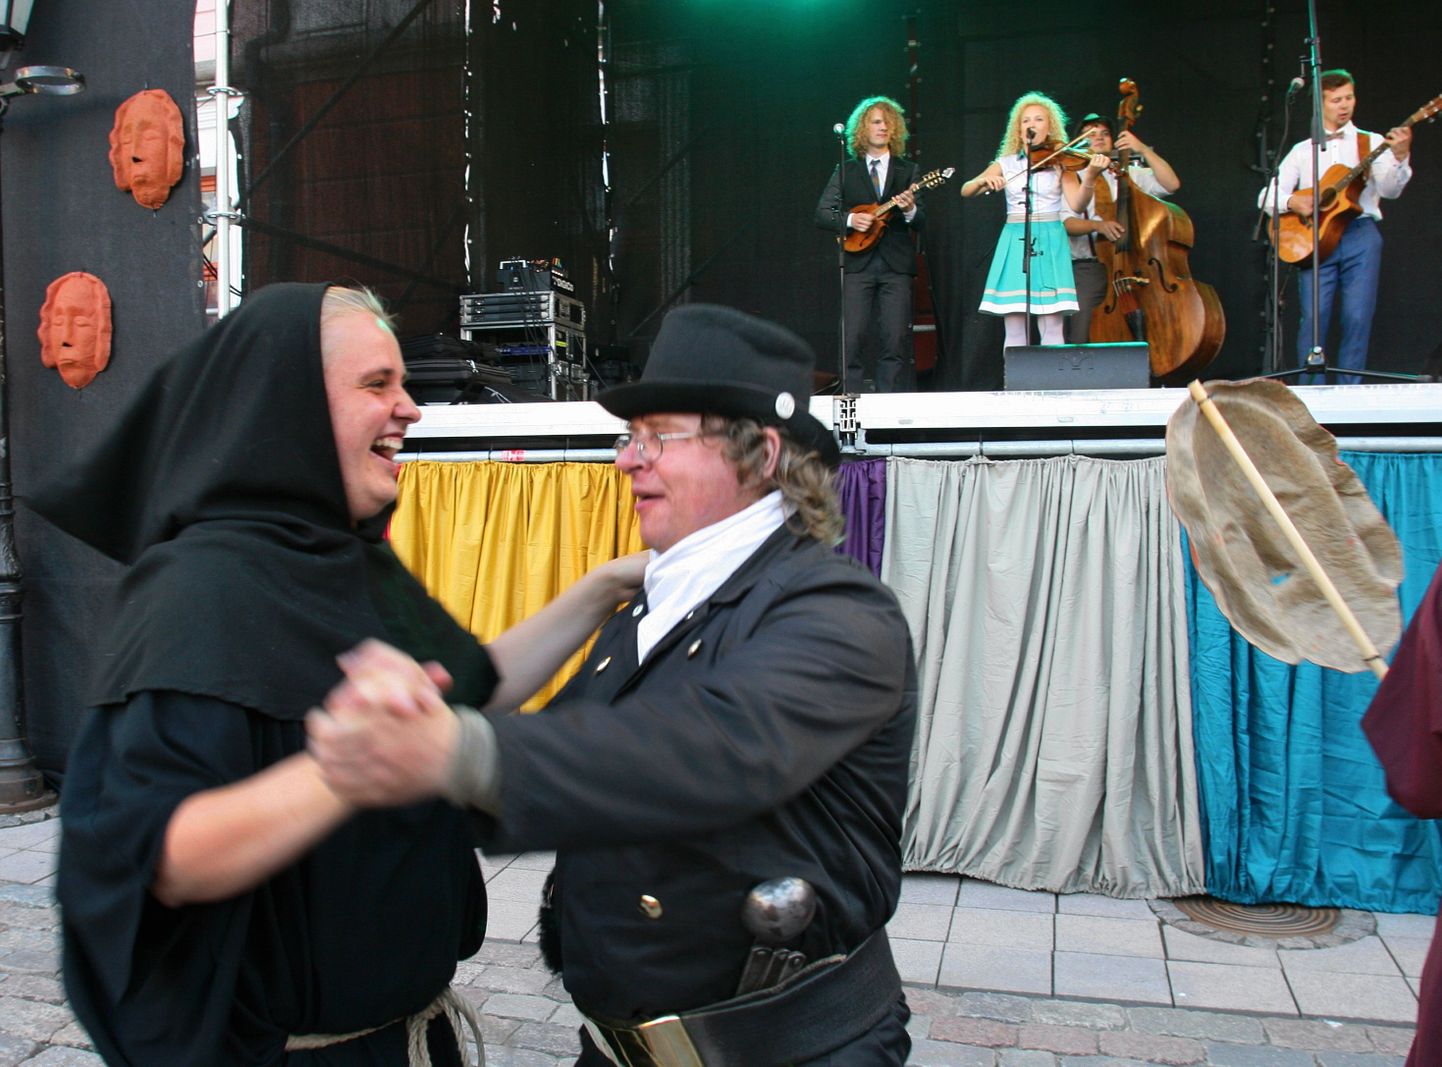 Curly Stringsi muusika kuulamisel on raske loobuda tantsust, nagu näitas ka selle bändi esinemine tänavustel Tartu hansapäevadel.